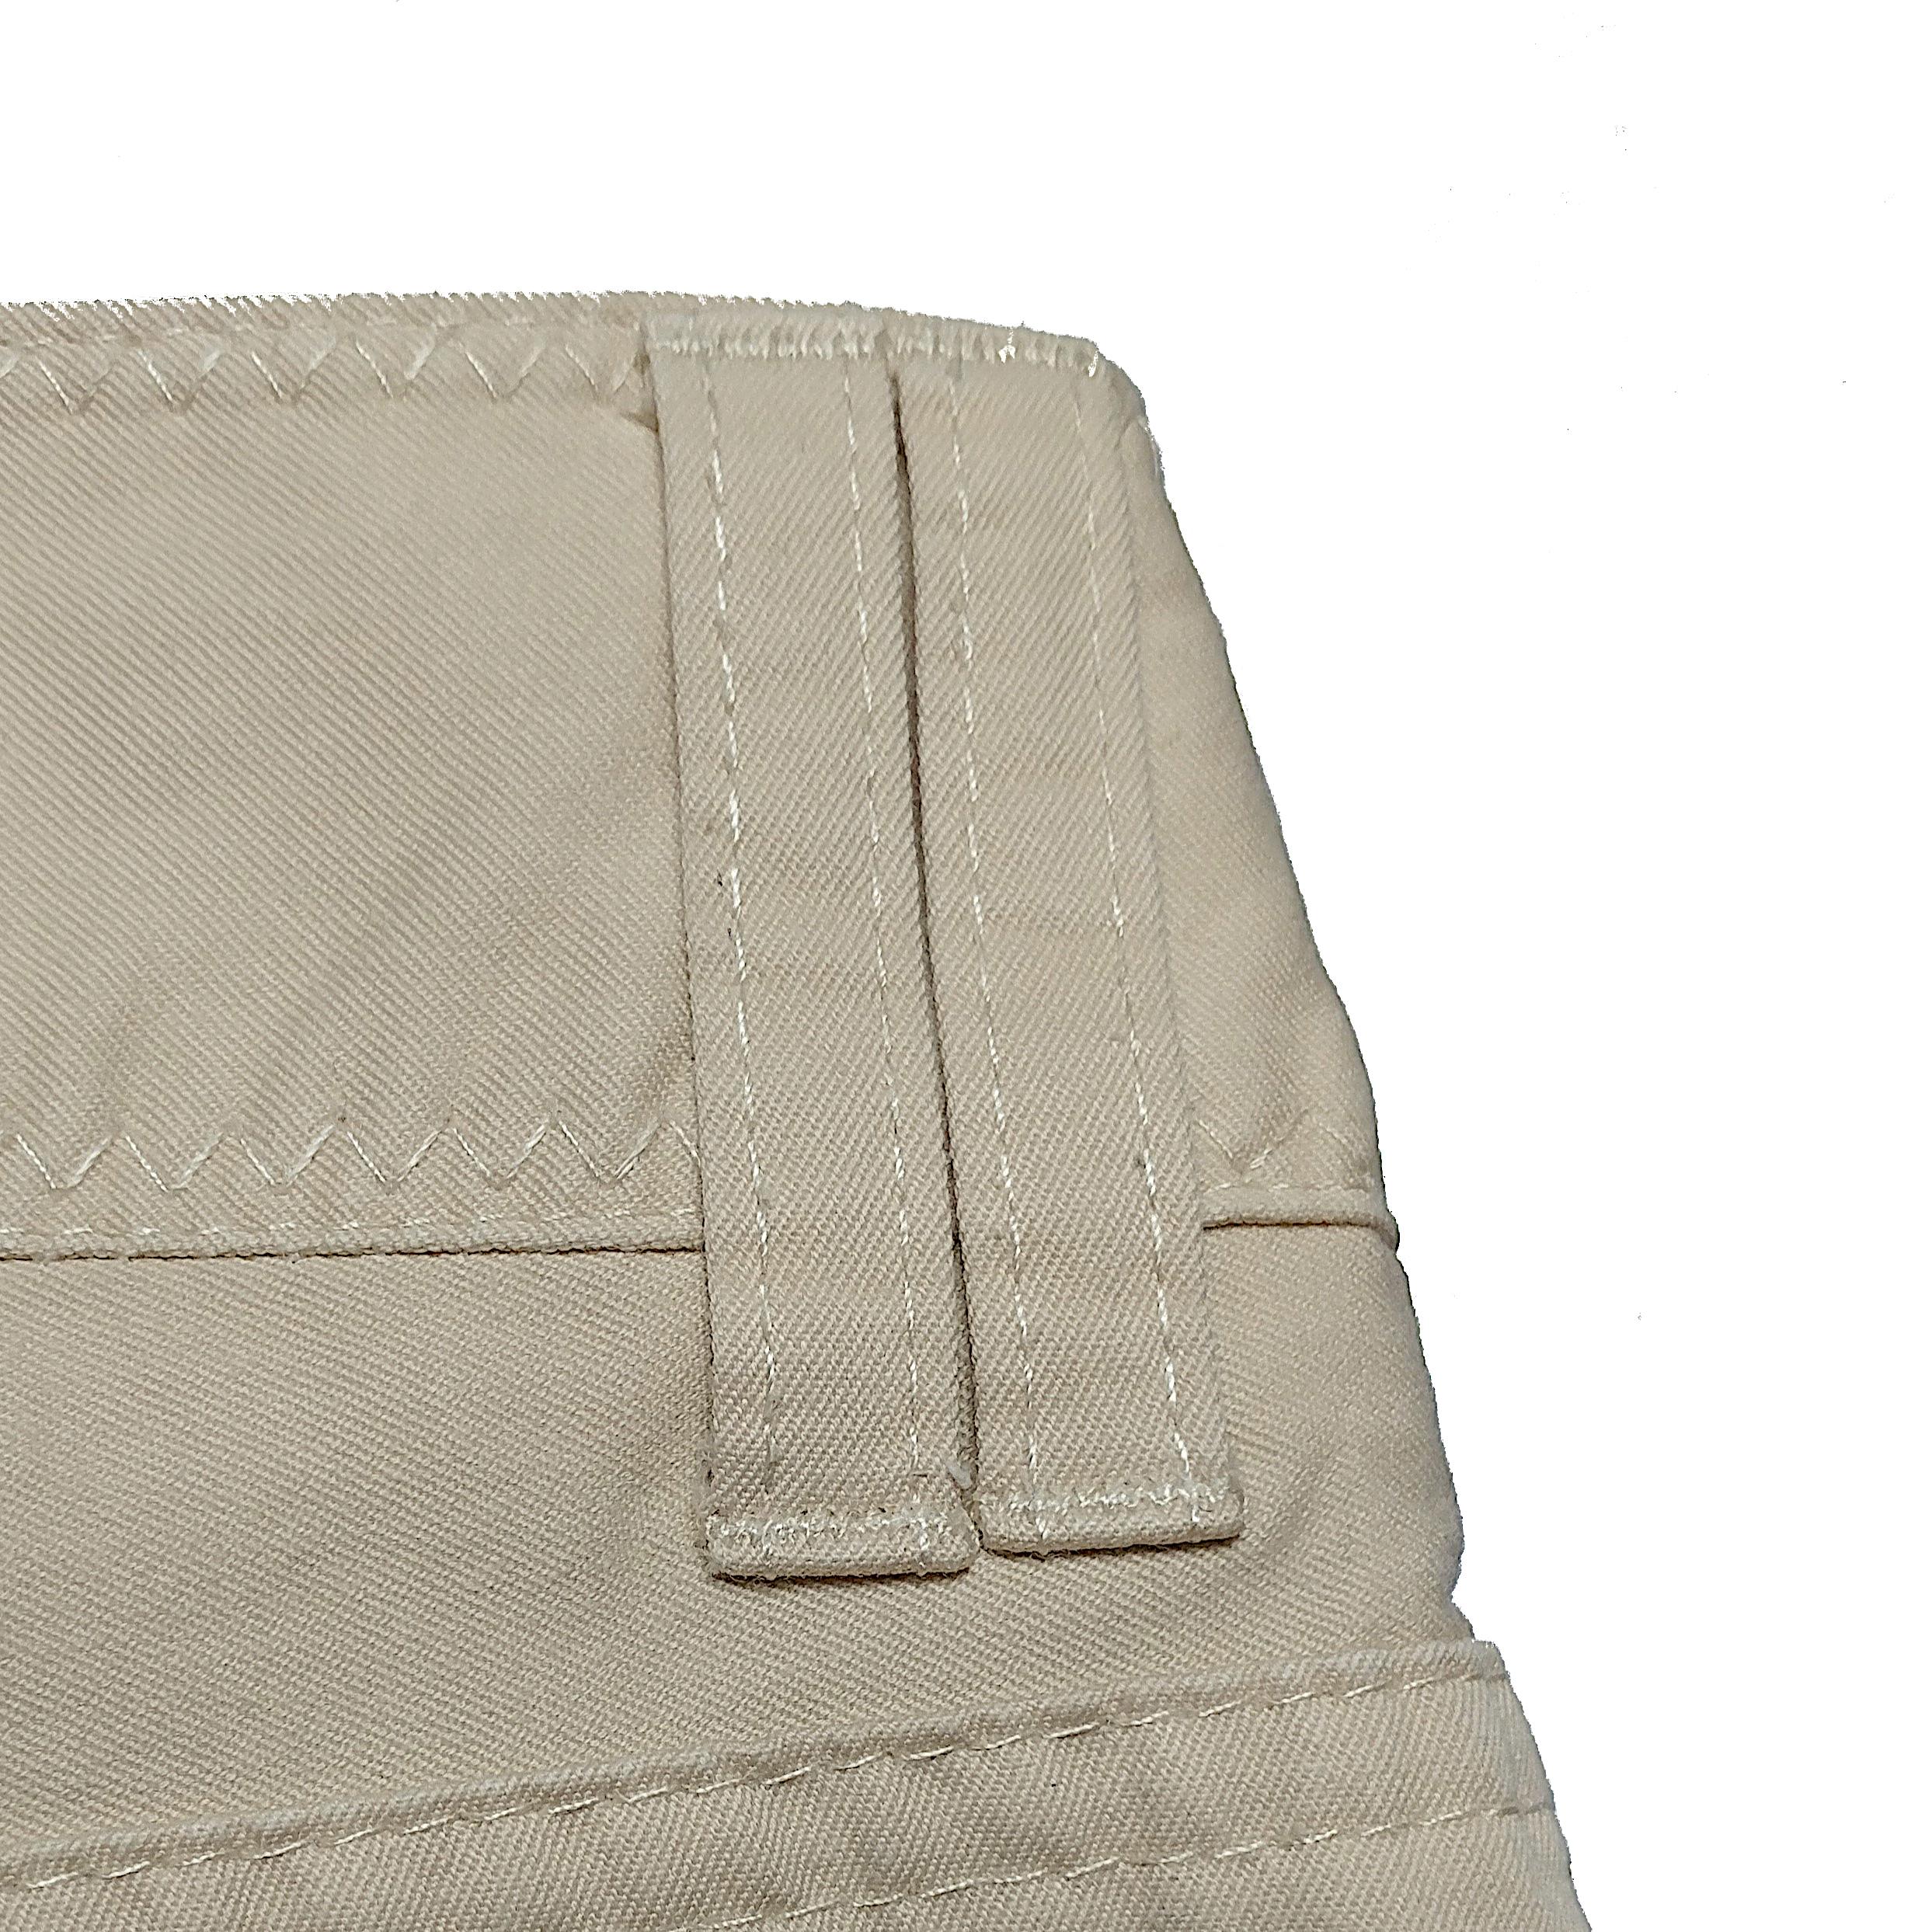 CHRISTIAN DIOR - Vintage Beige Cotton Capri 7/8 Pants | Size 6US 38EU For Sale 3